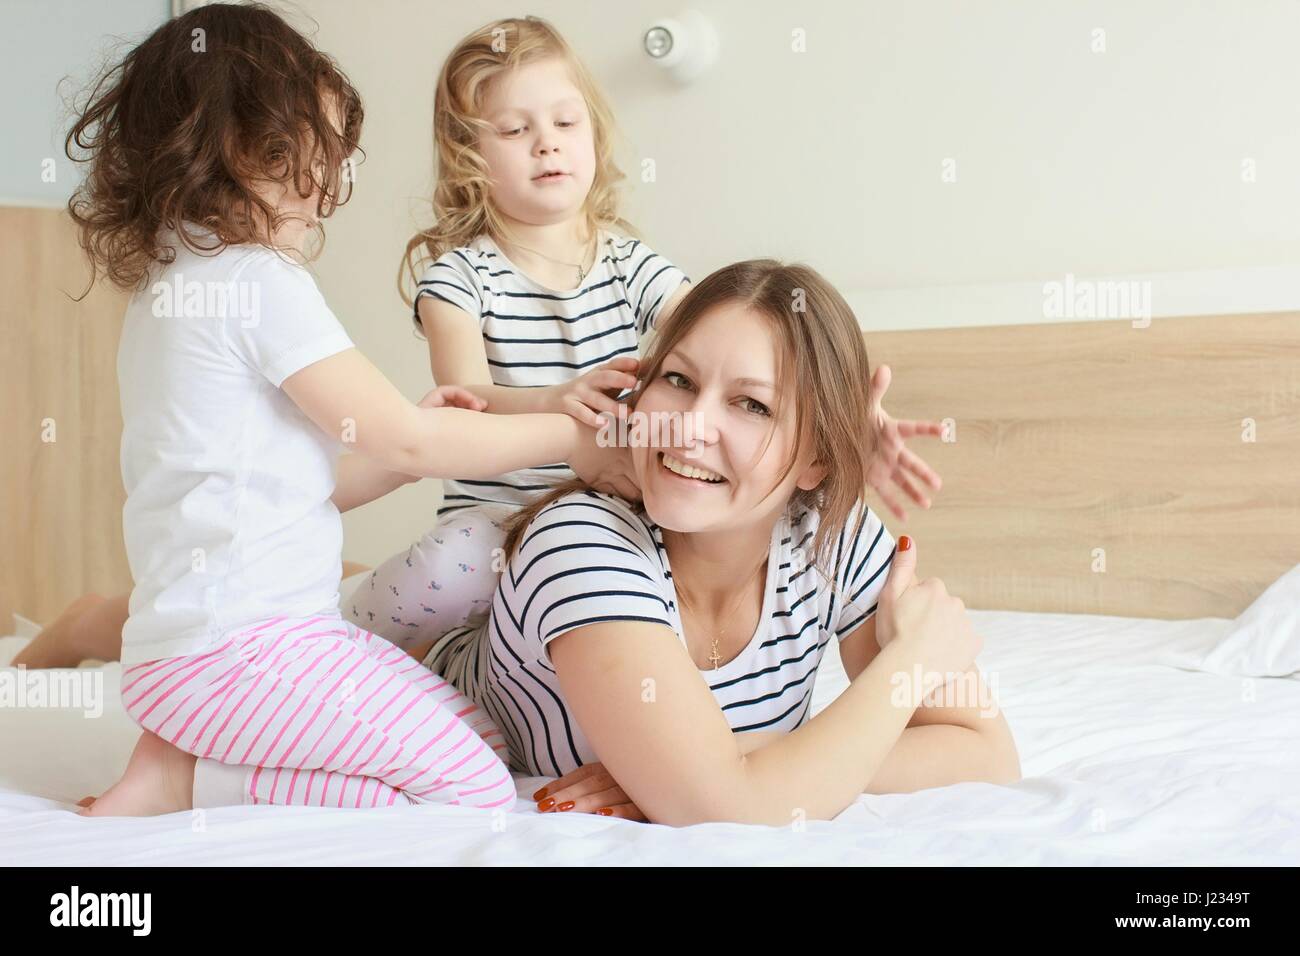 Glücklich liebende Familie. Mutter und ihre Tochter Kind Mädchen spielen und umarmt. Stockfoto